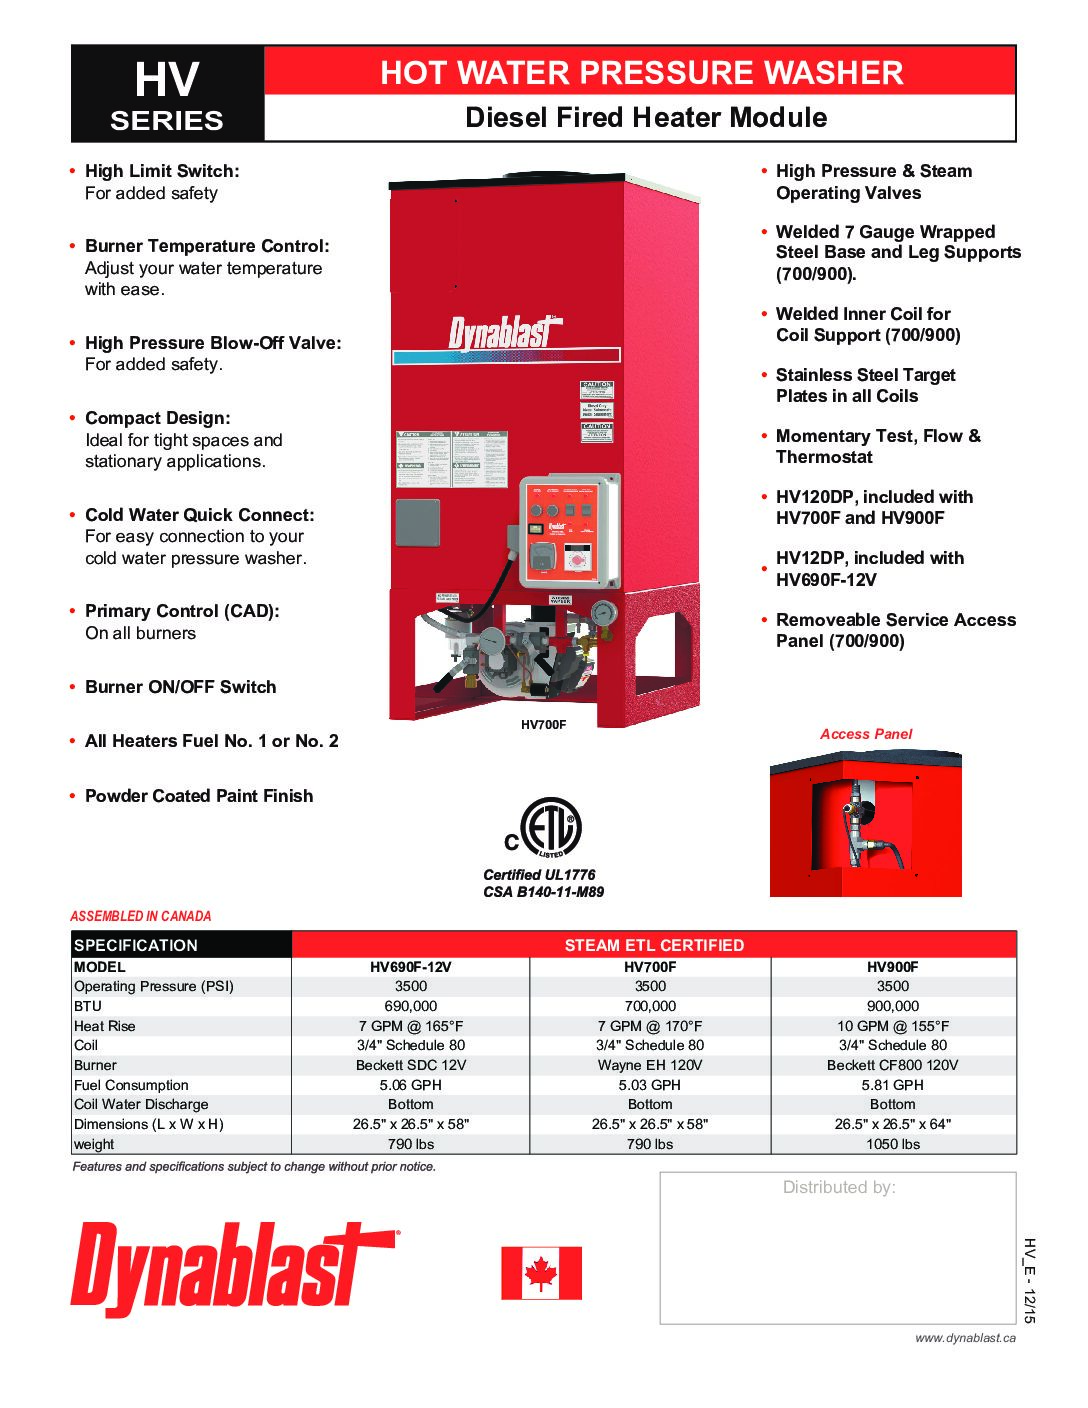 Dynablast HV900F Hydrovac Hot Water & Steam Heater Module - English